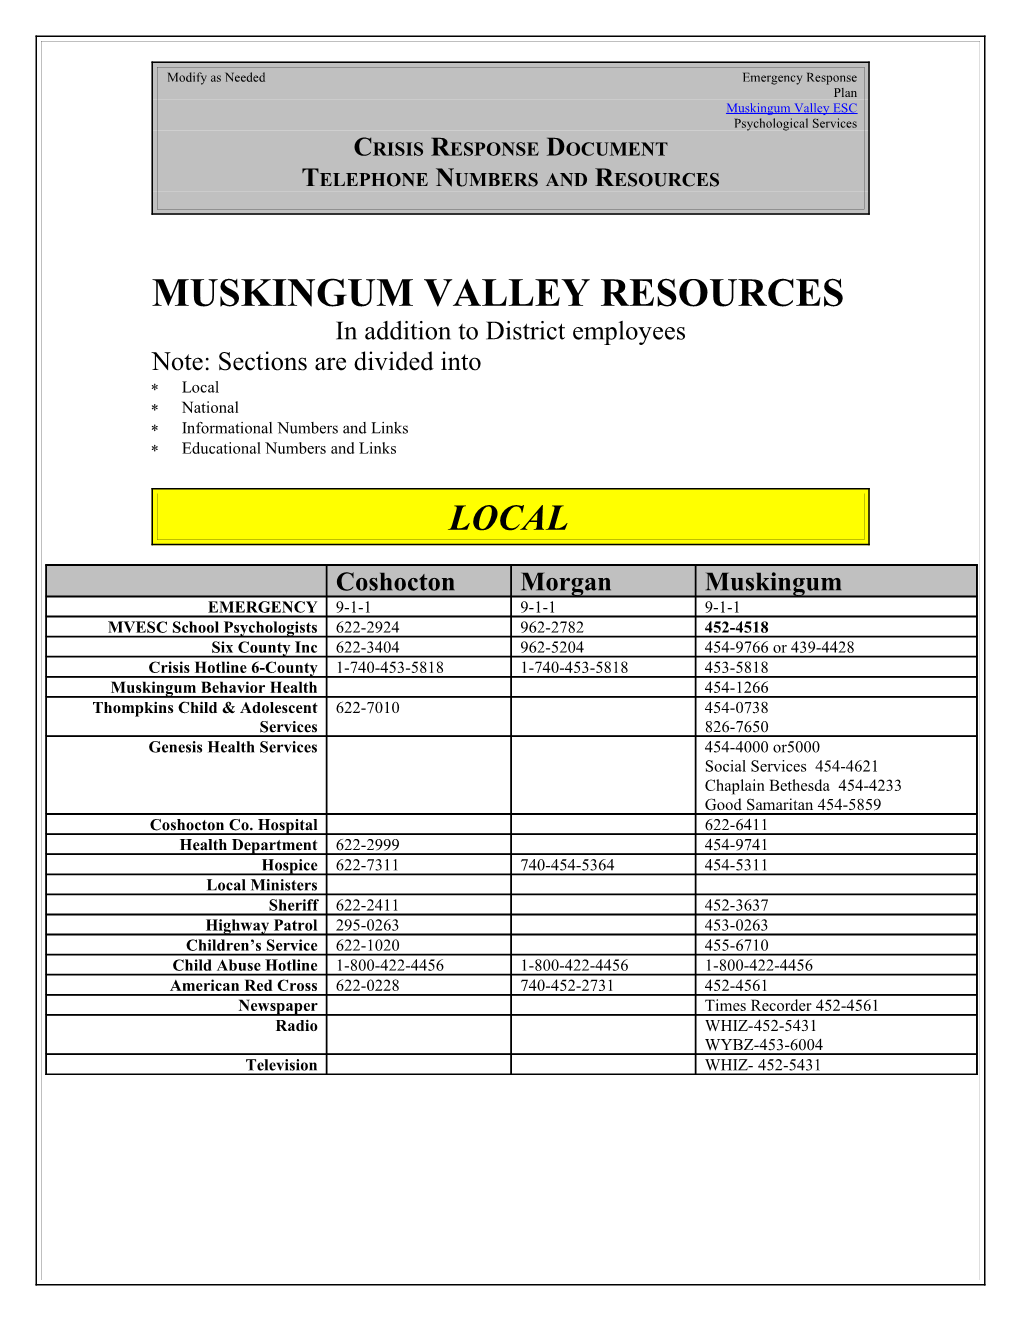 Muskingum Valley Resources